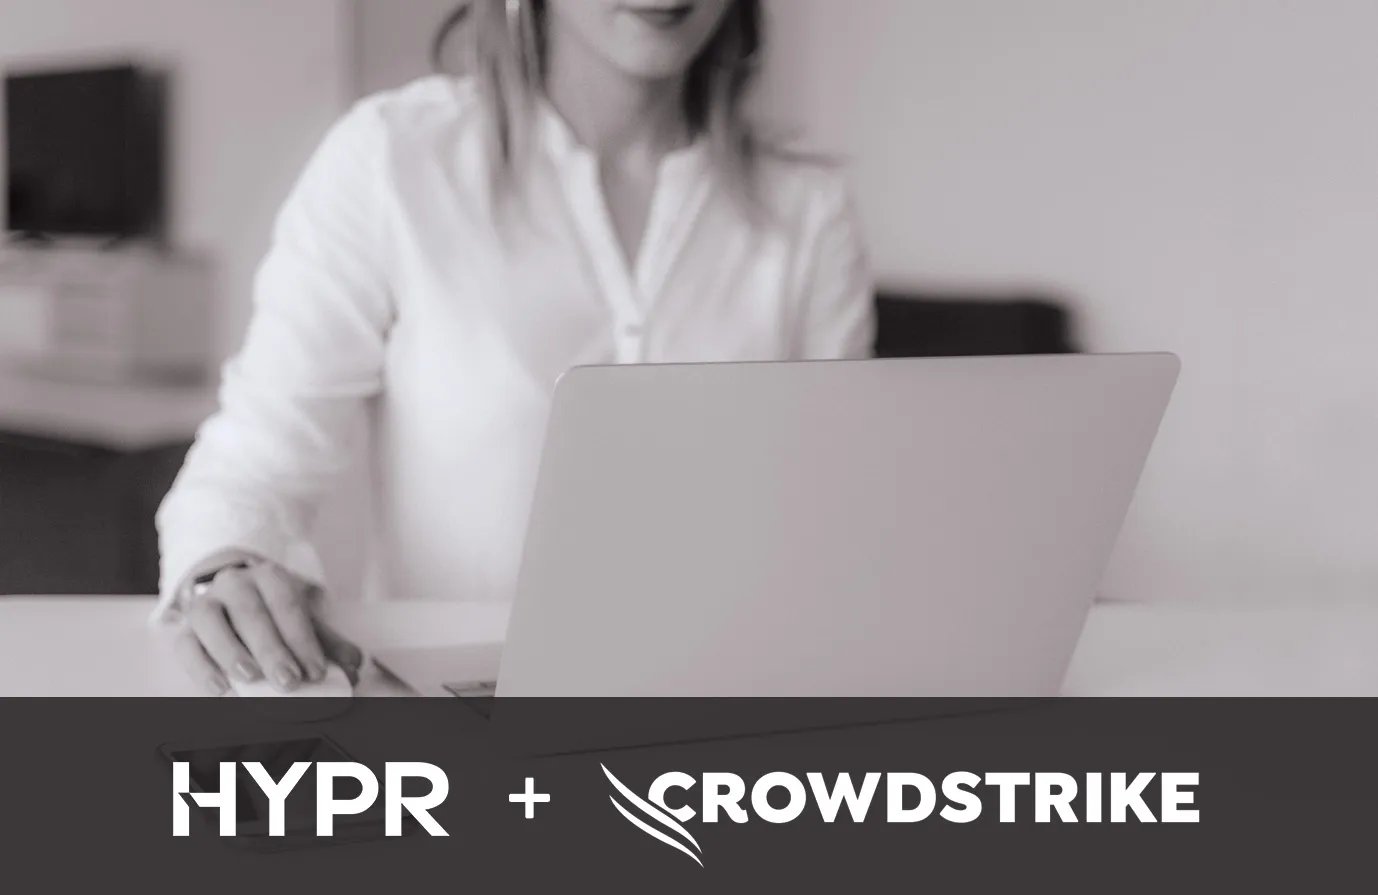 HYPR CrowdStrike integration